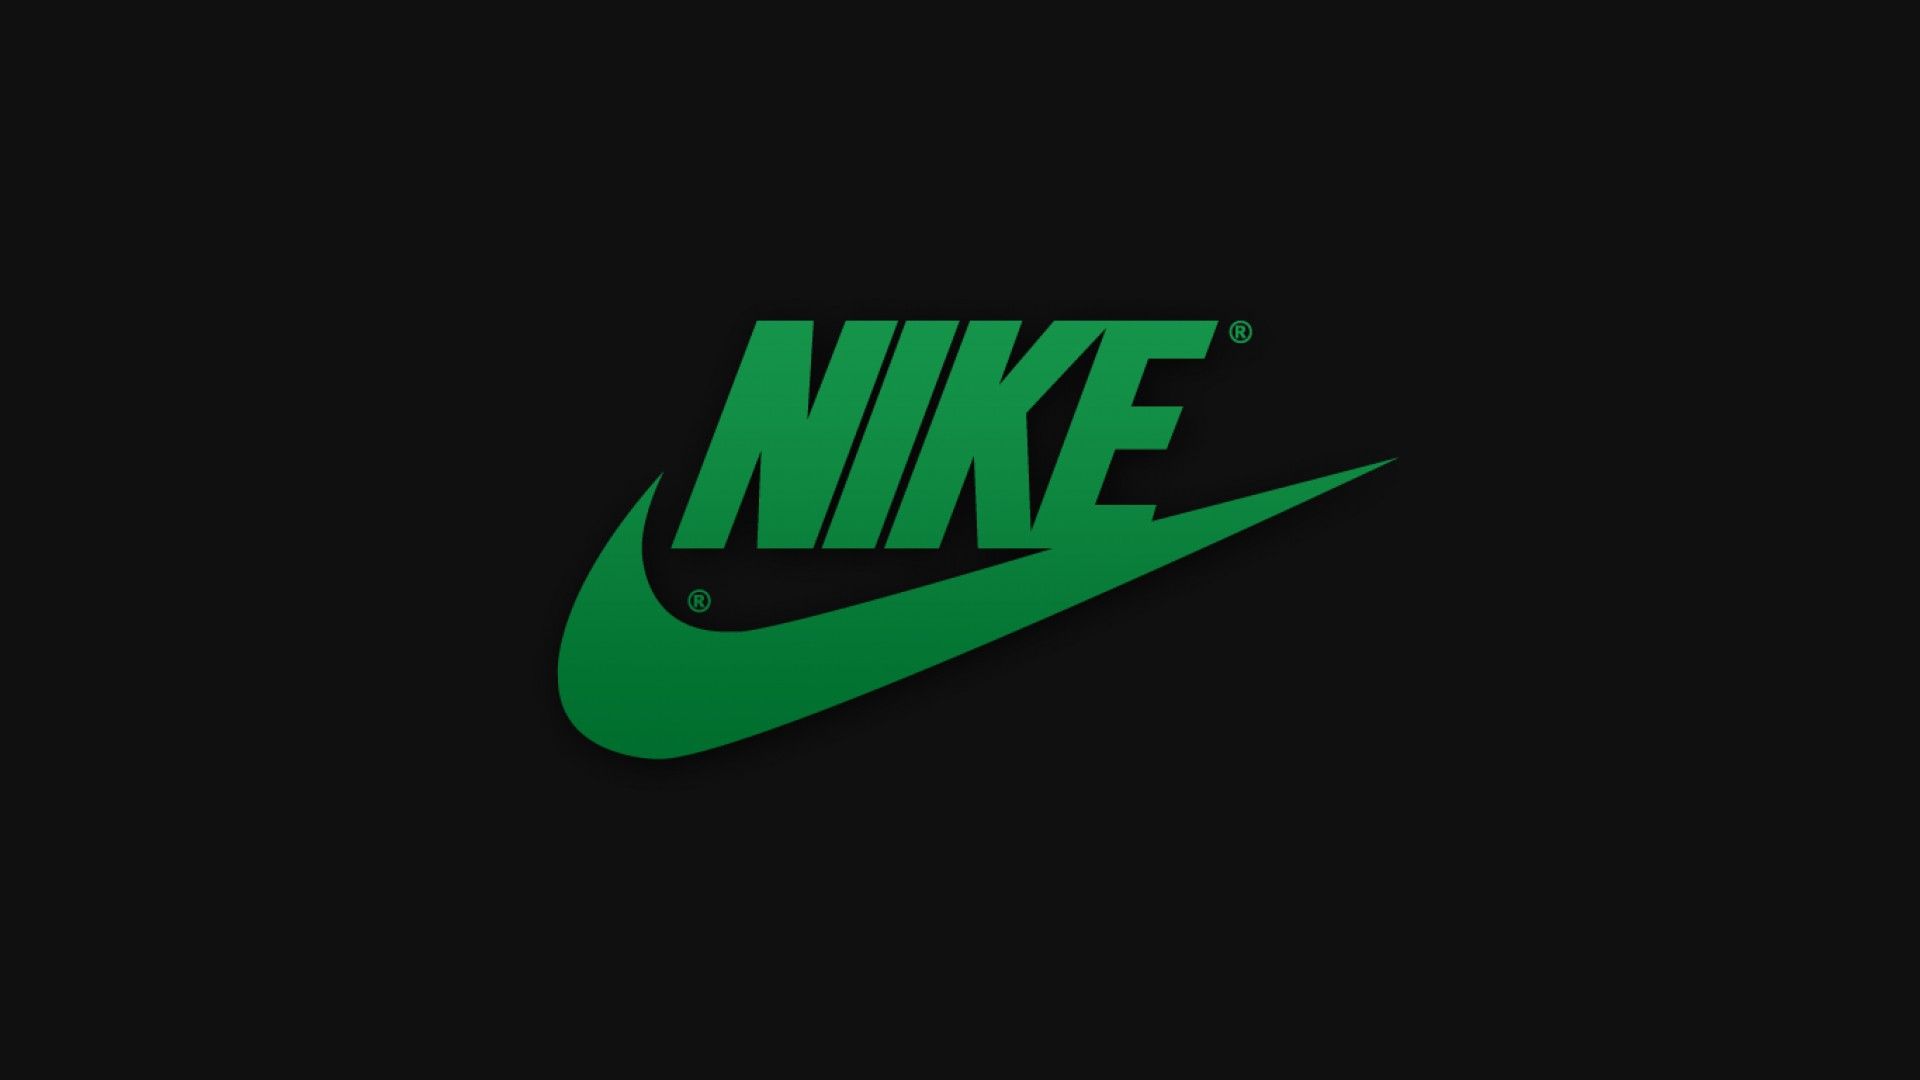 Khám phá bộ sưu tập hình nền Nike logo độc đáo cho điện thoại của bạn. Thể hiện sự yêu mến với thương hiệu quen thuộc bằng những hình ảnh đầy sáng tạo và độc đáo.